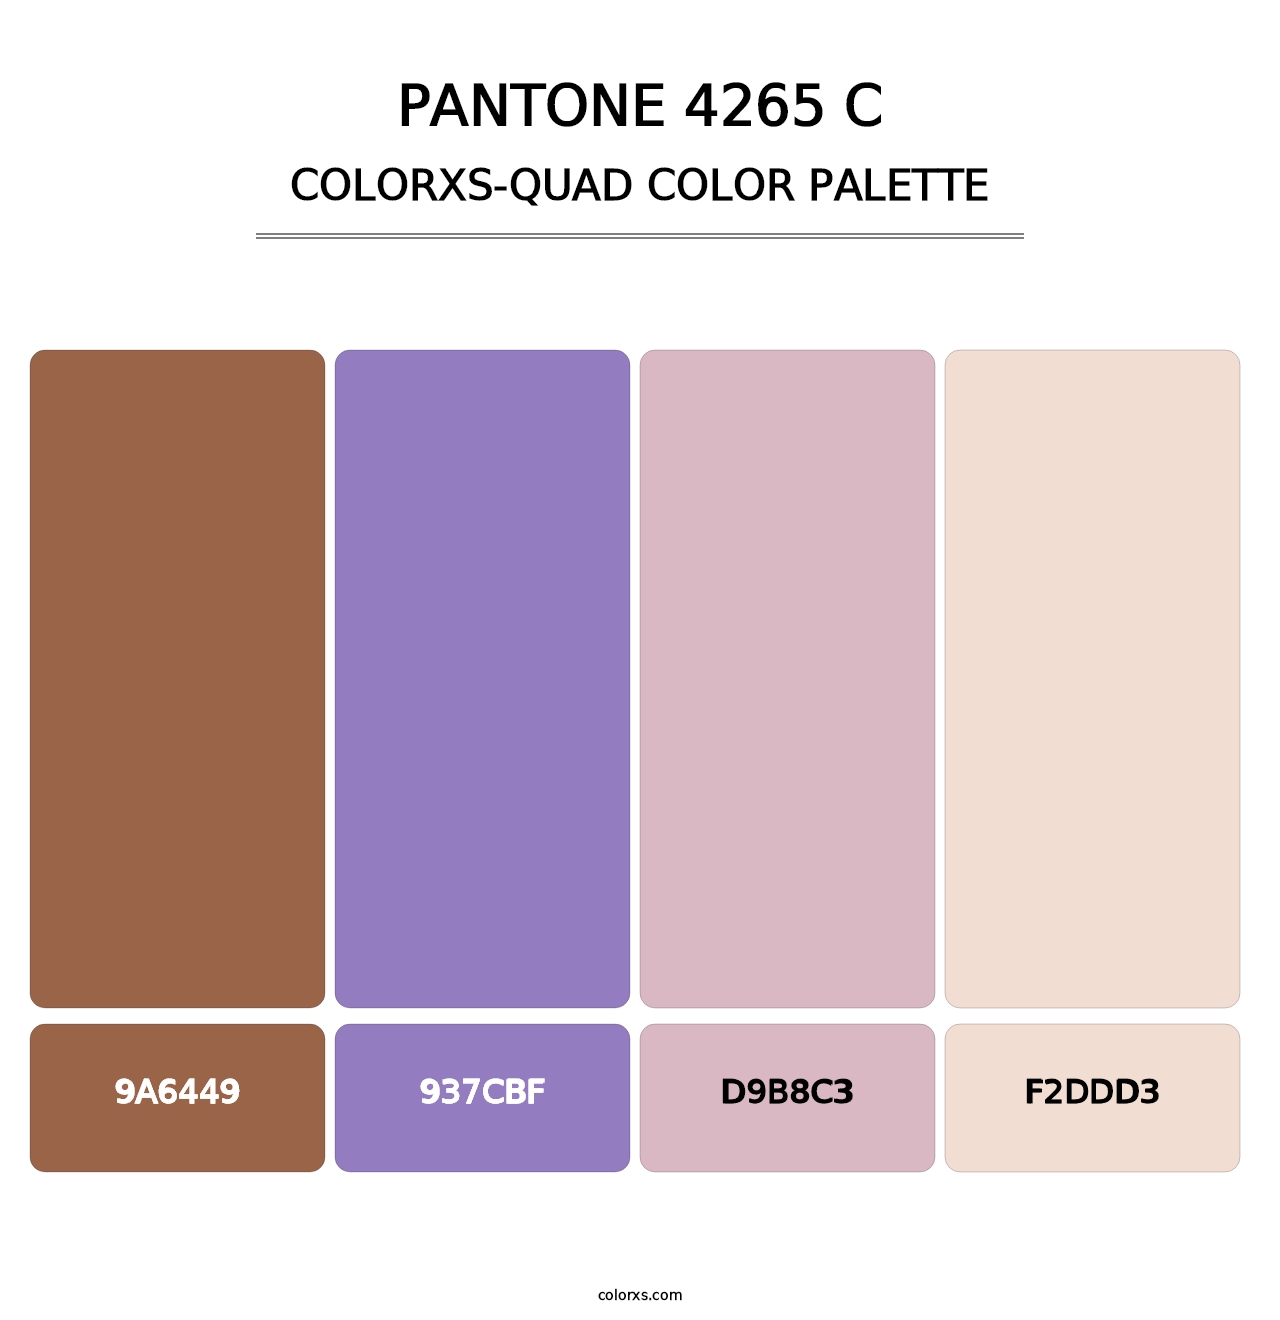 PANTONE 4265 C - Colorxs Quad Palette